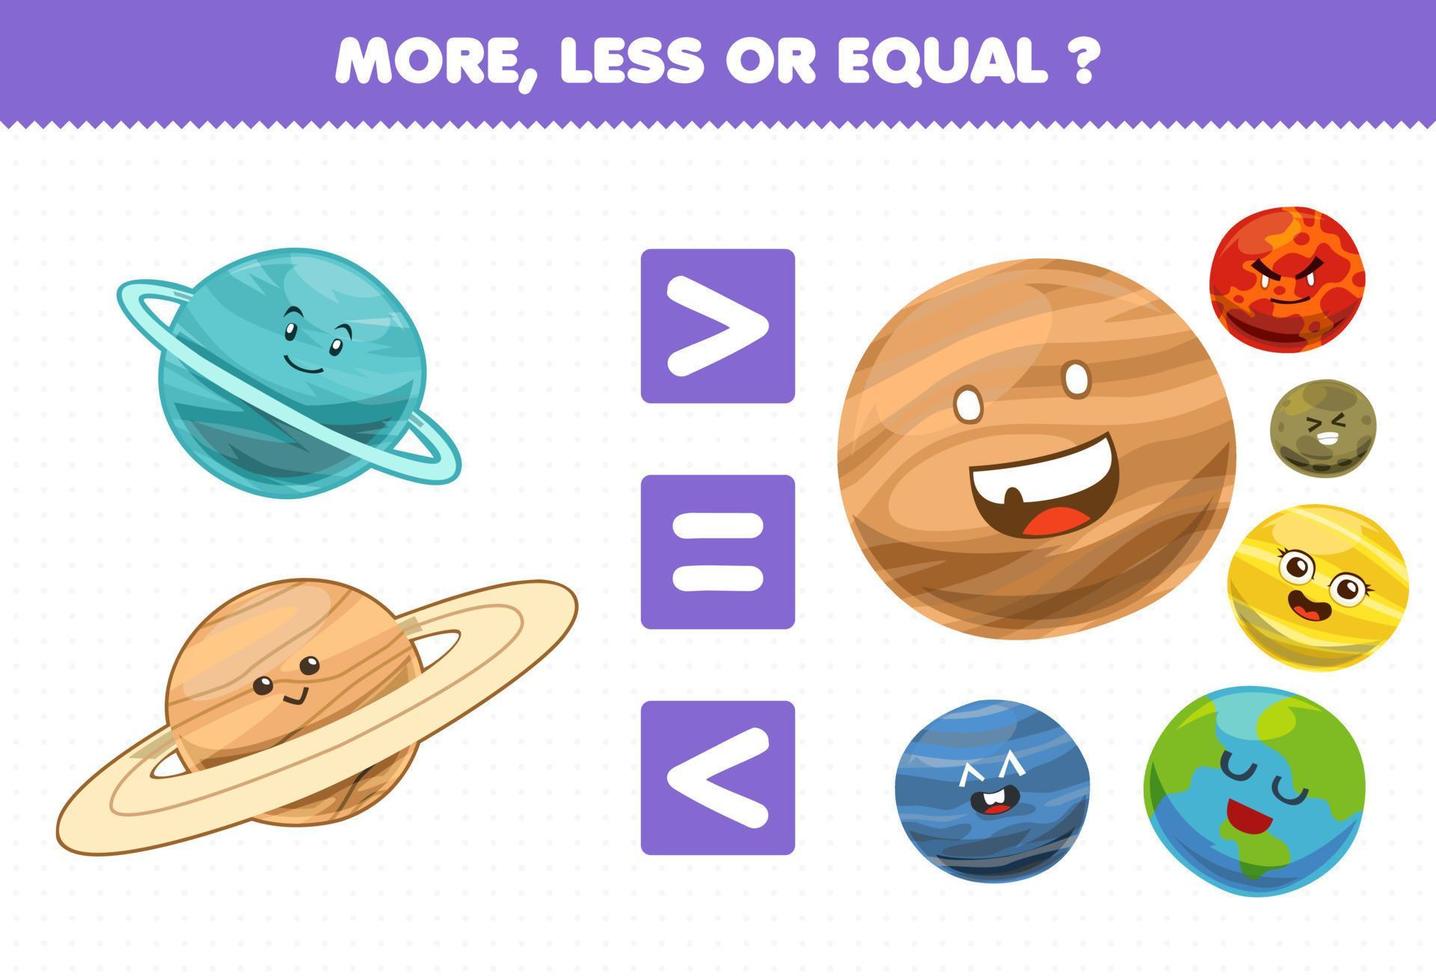 juego de educación para niños más menos o igual cuenta la cantidad de lindos dibujos animados sistema solar planeta urano saturno júpiter marte mercurio venus tierra neptuno vector